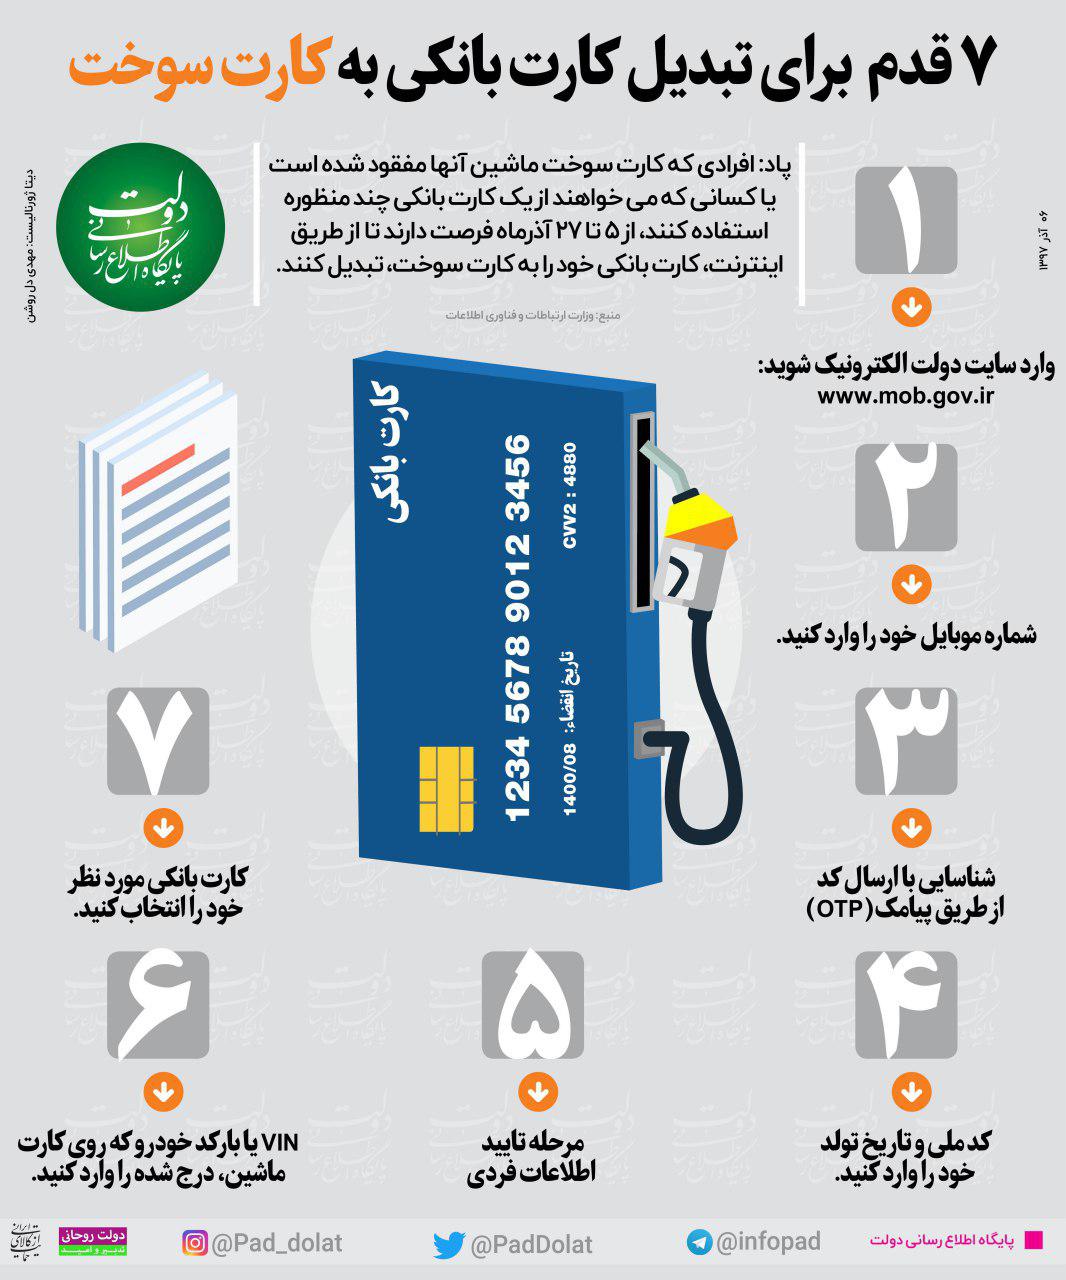 هفت قدم برای تبدیل کارت بانکی به کارت سوخت